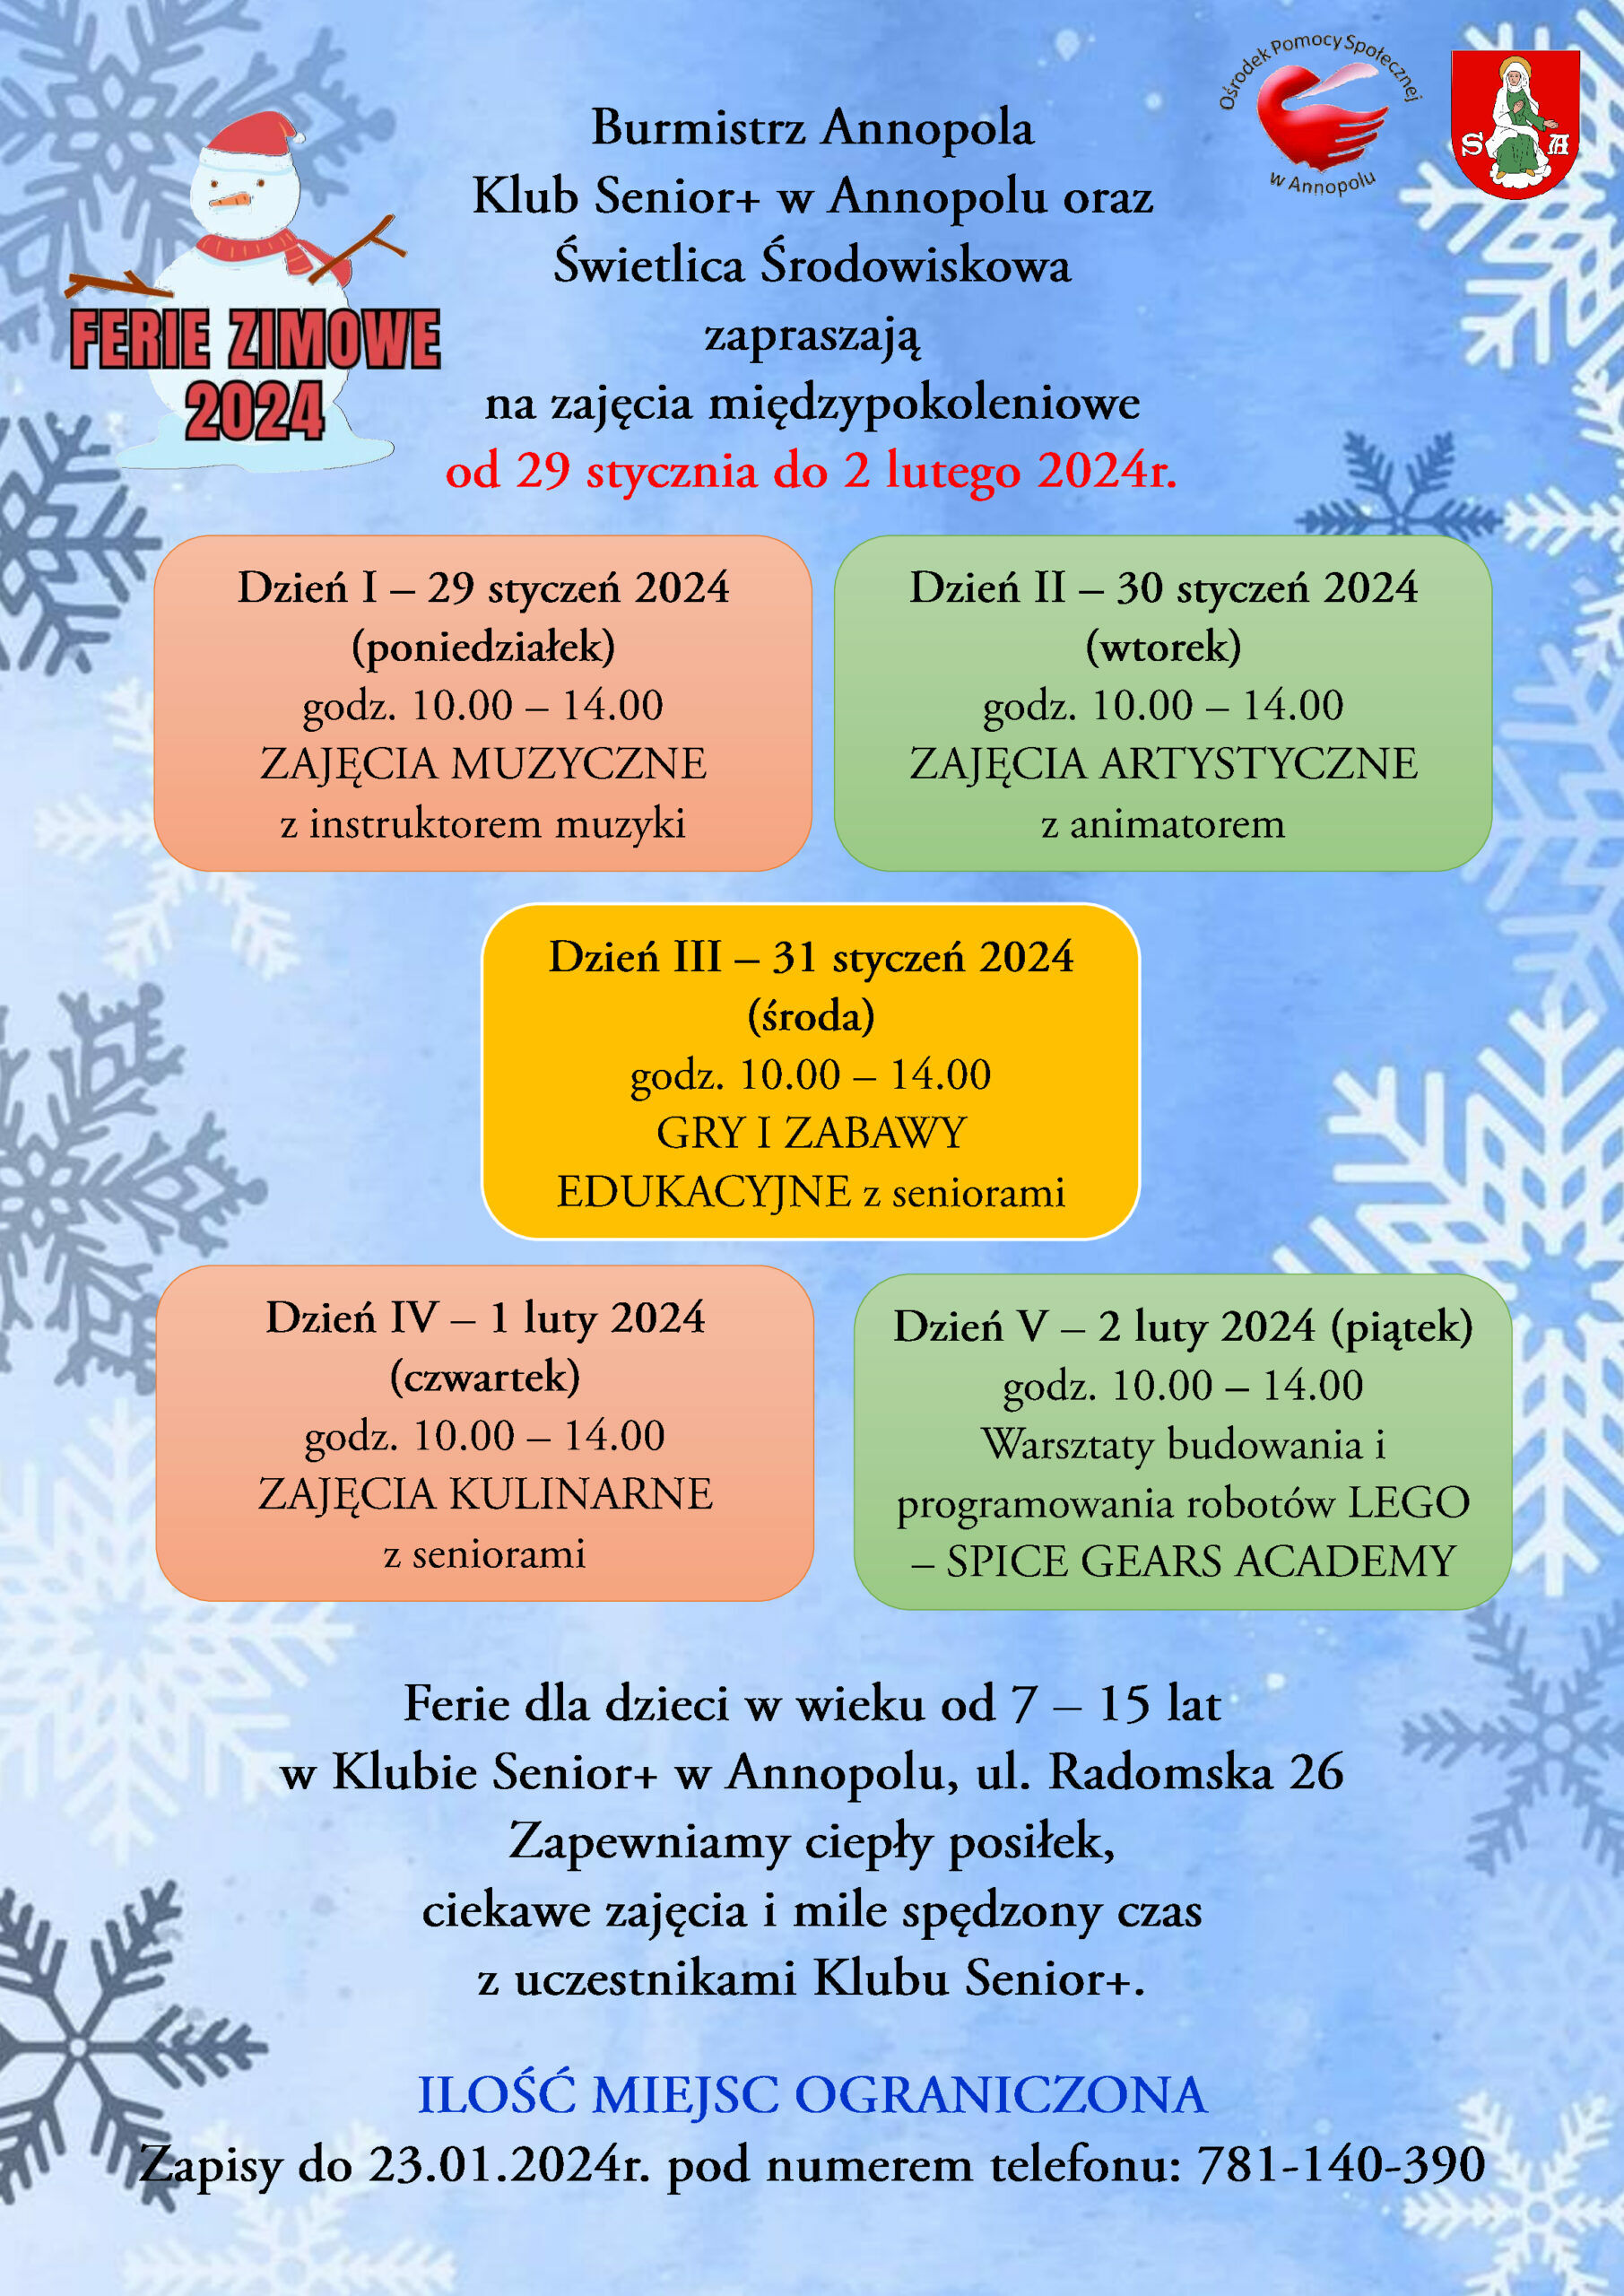 Zdjęcie przedstawia plakat informacyjny o zimowych feriach organizowanych przez klub Zapraszaj Ankopole. Zawiera grafikę związane z zimą, daty wydarzeń i ich opisy, a także informacje kontaktowe.